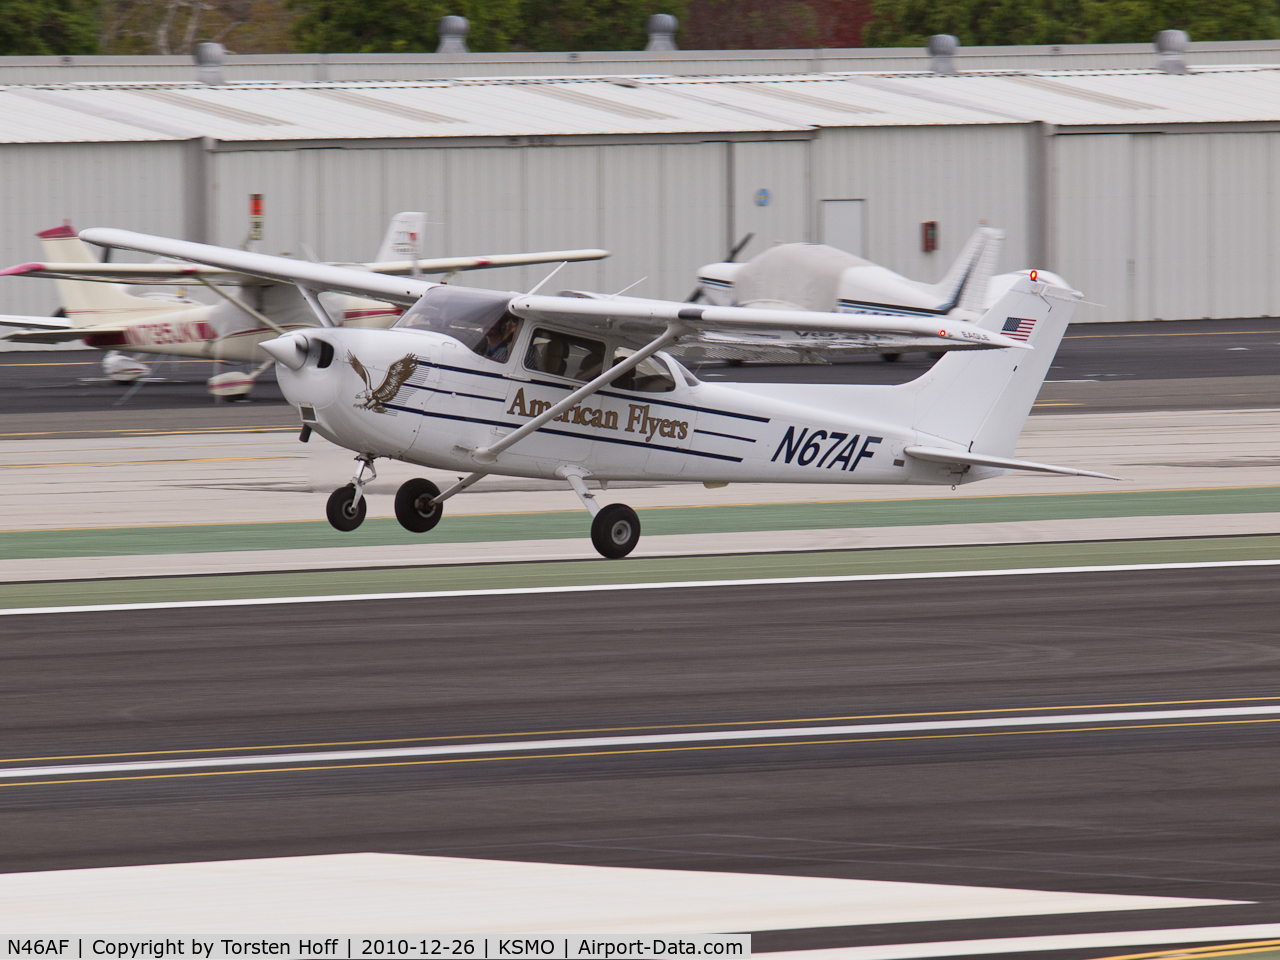 N46AF, 2001 Cessna 172R C/N 17281035, N46AF departing from RWY 21